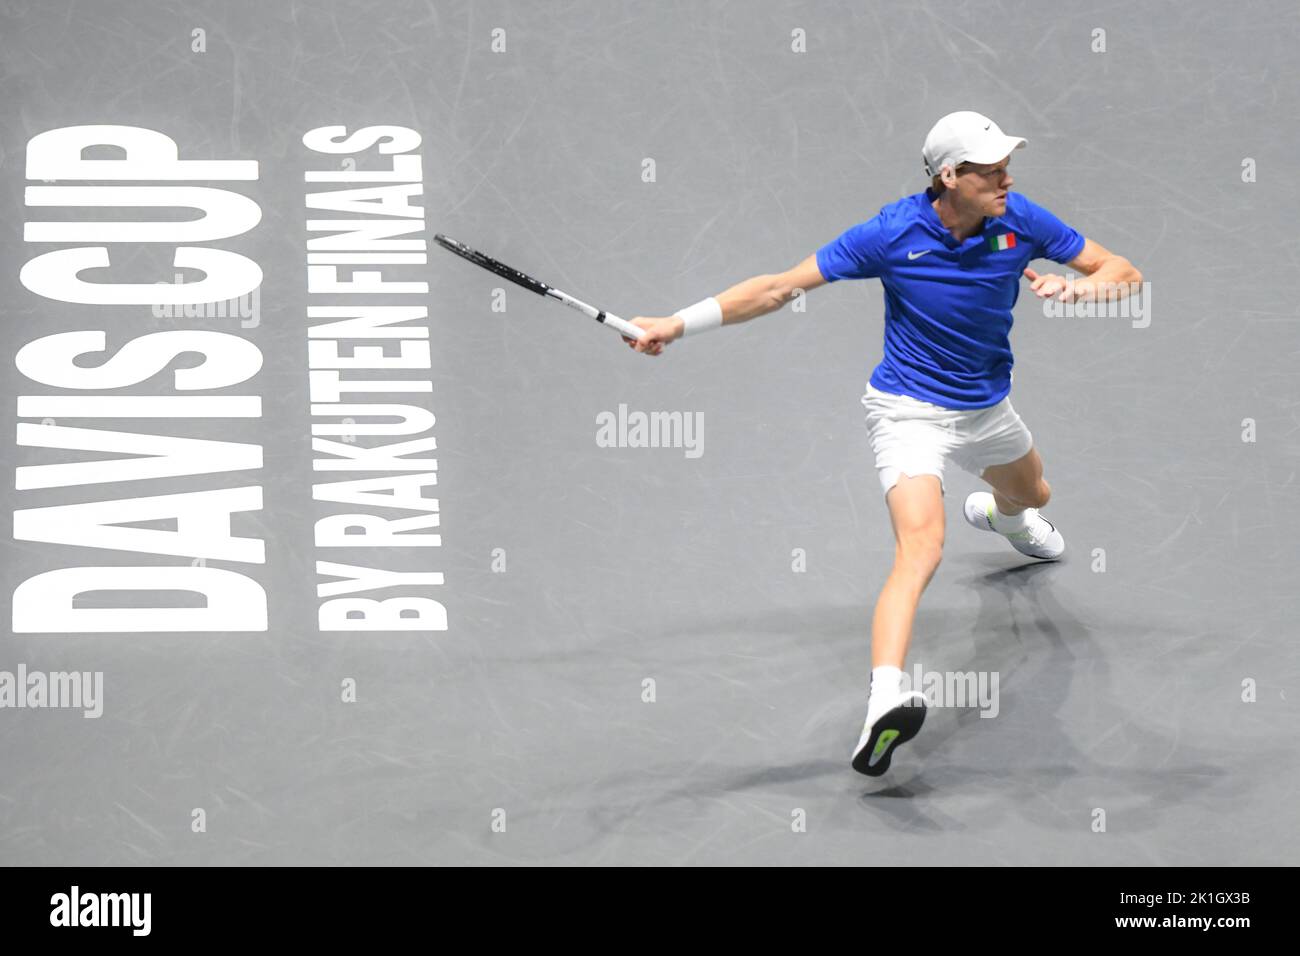 Jannick sinner (Italie) contre la Suède. Finale de la coupe Davis, Groupe A (Bologne) Banque D'Images